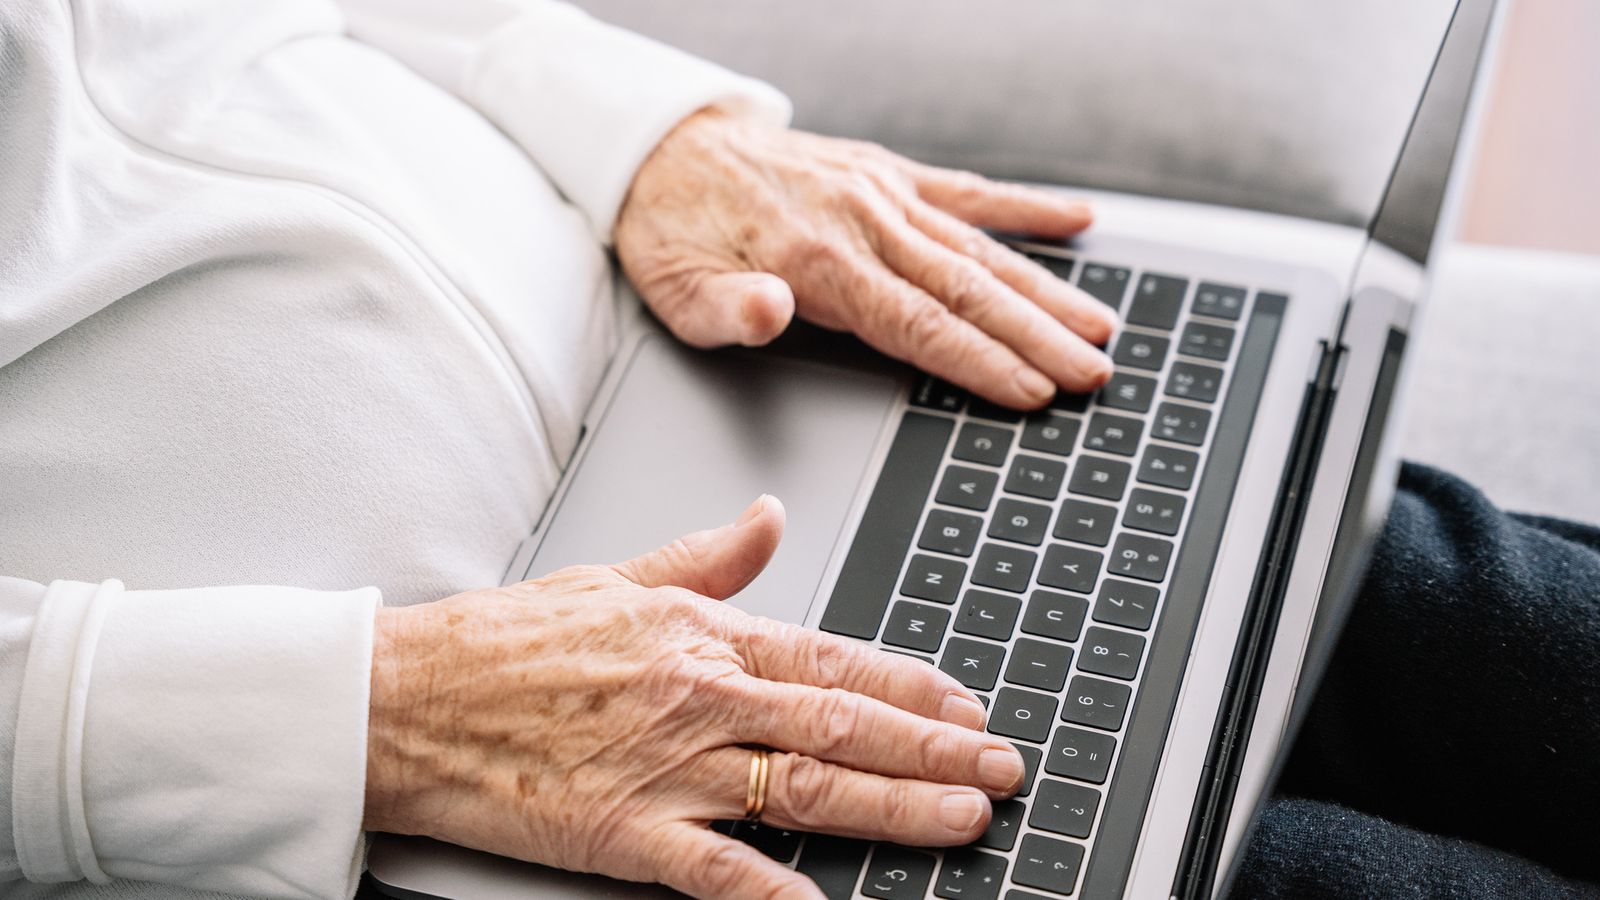 „Тревожно“ проучване разкрива ежедневни технически проблеми, пред които са изправени по-възрастните хора - тъй като милиони изобщо не използват интернет